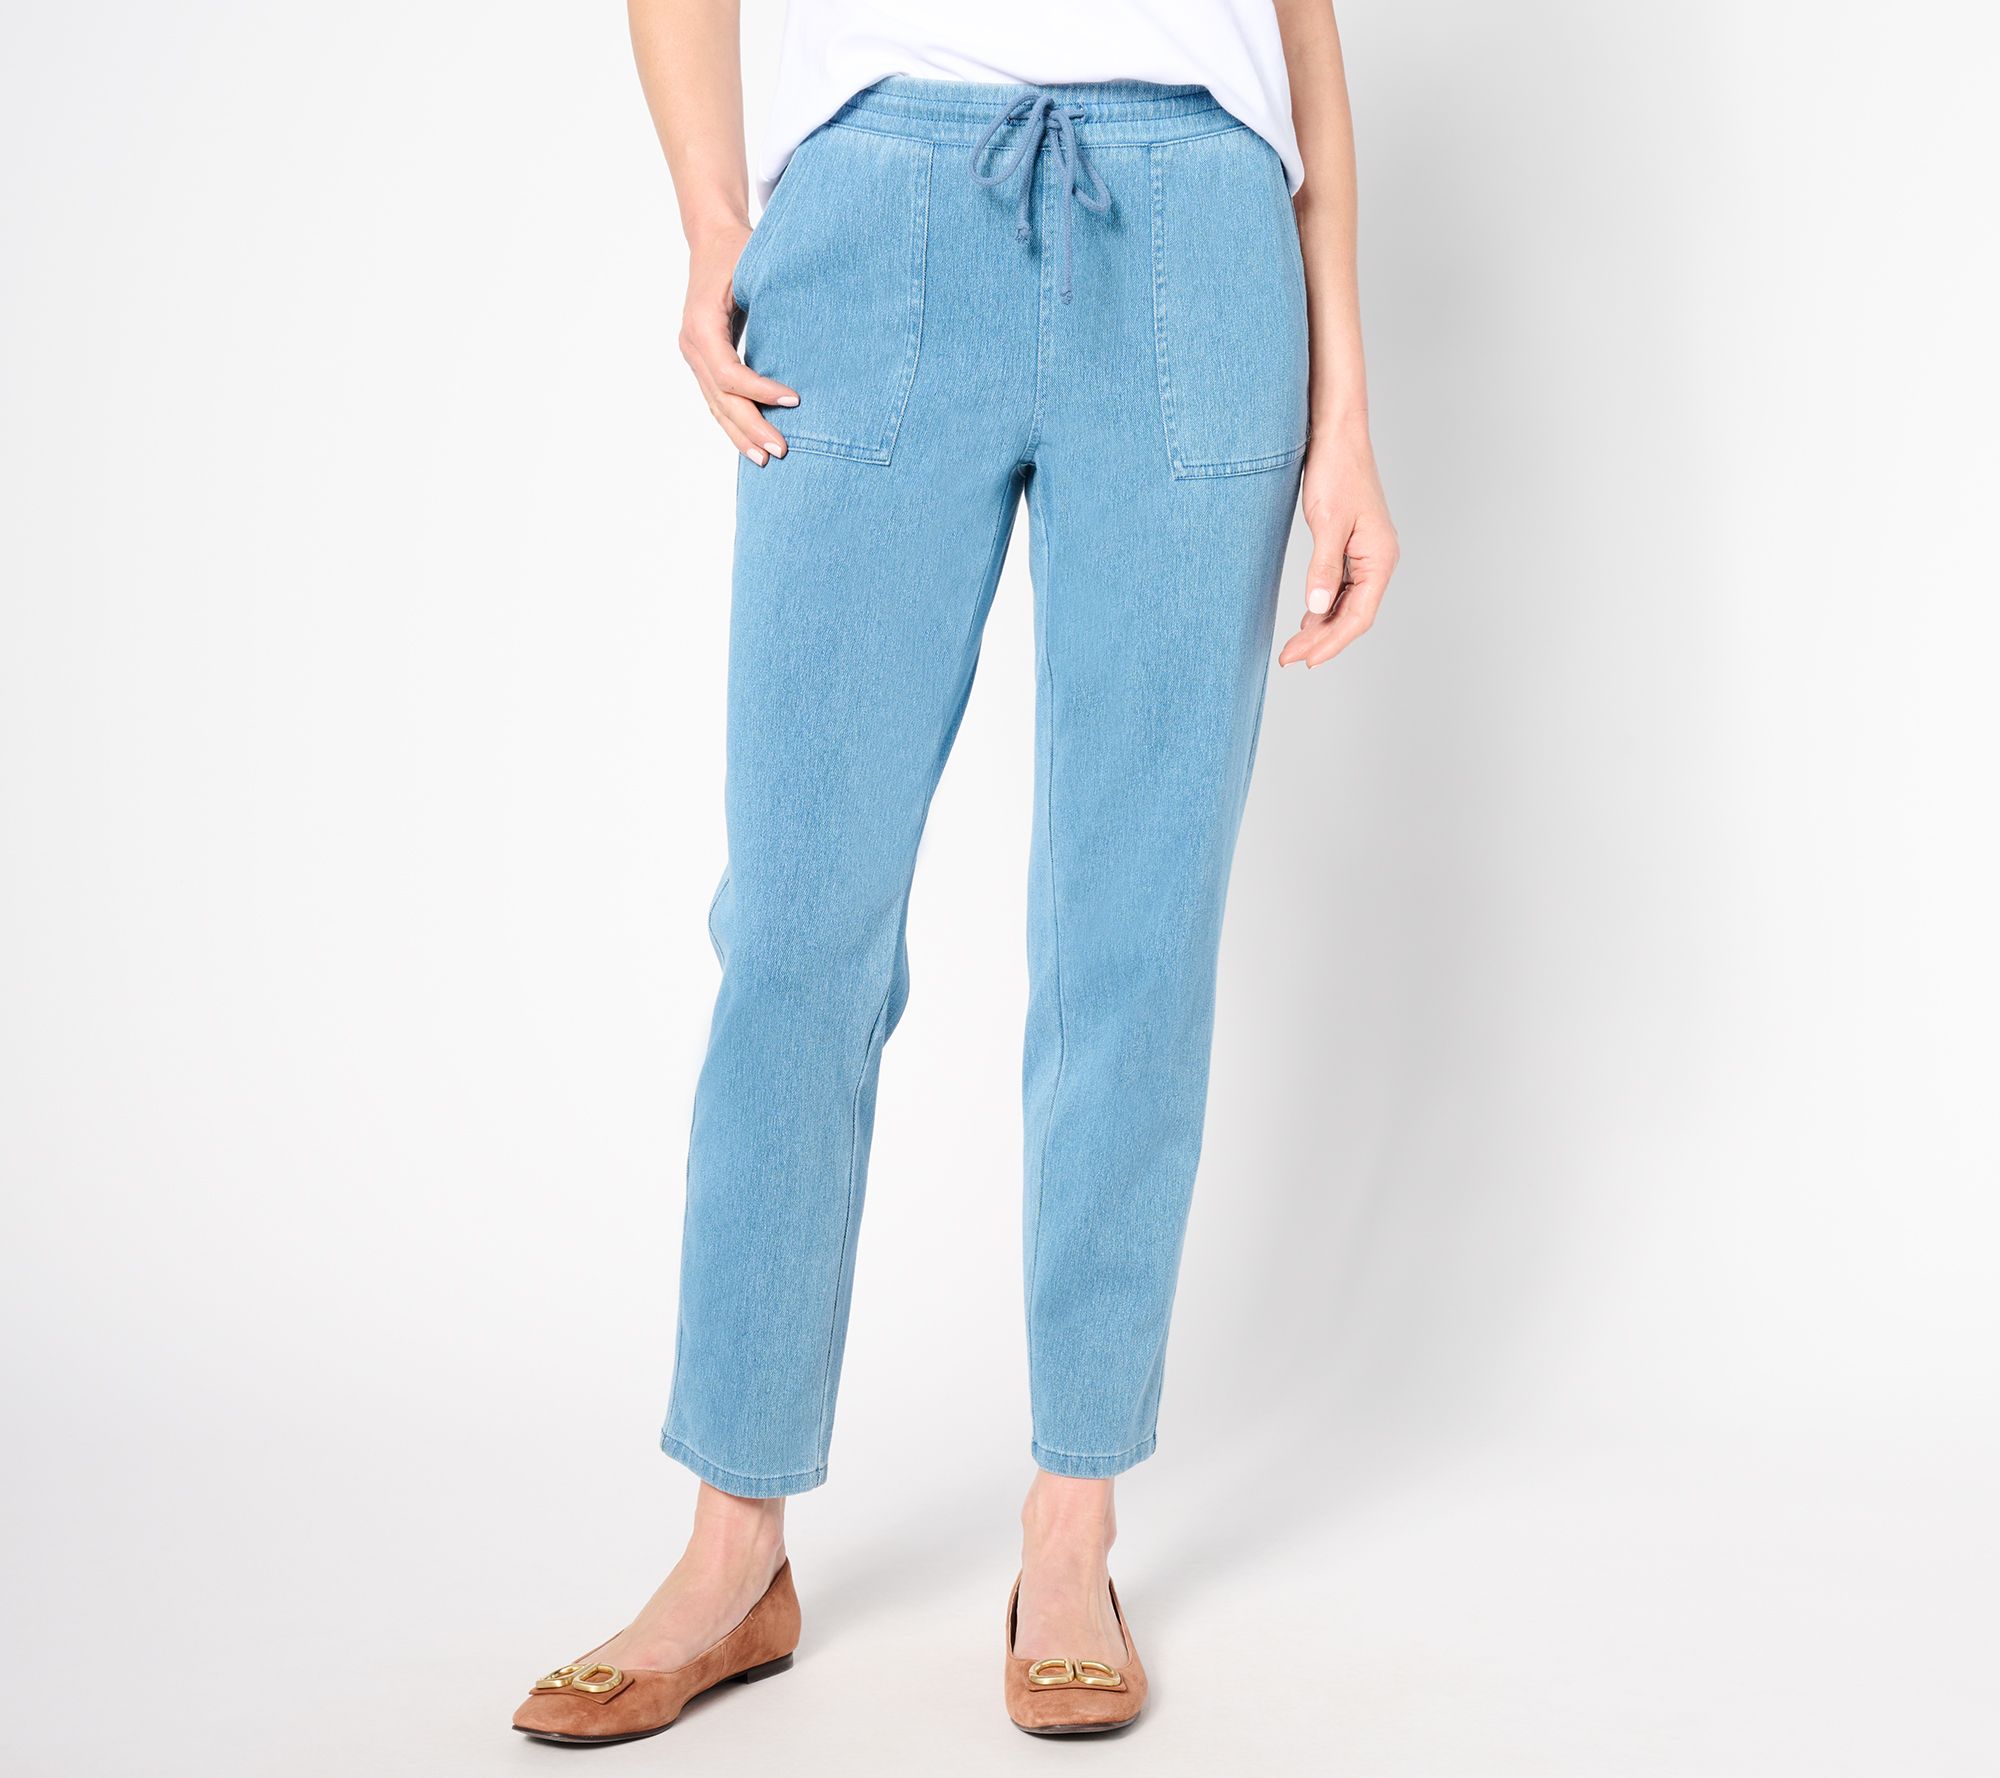 Jeans Lounge Pants - Faux Denim in 100% Cotton